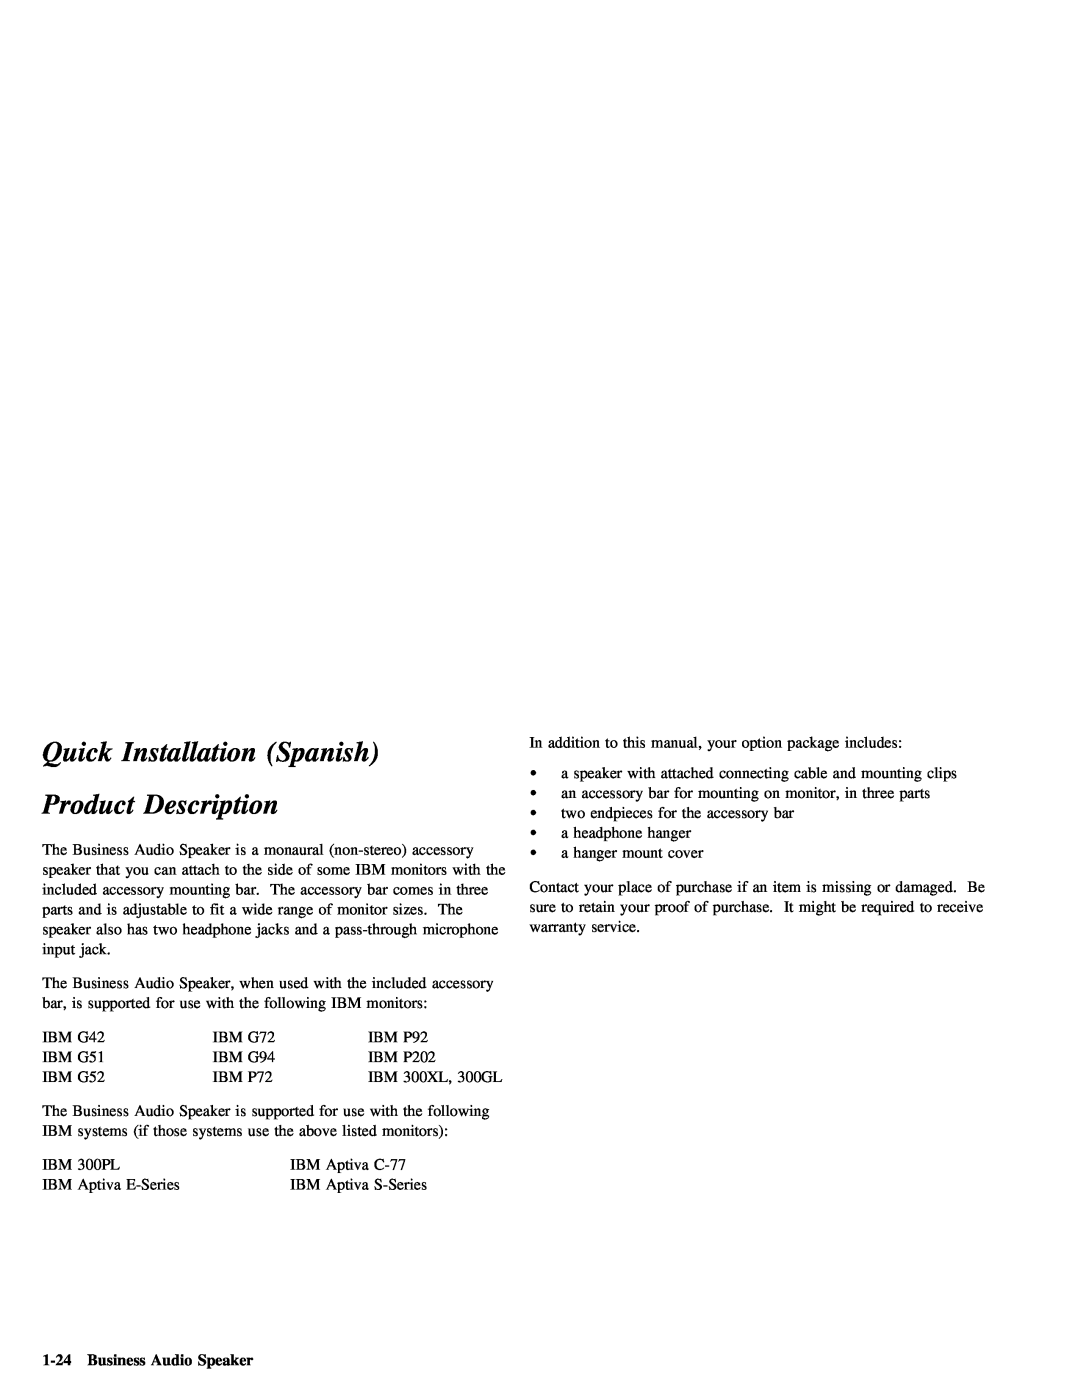 IBM 05L1596 manual Quick Installation Spanish, 1-24Business Audio Speaker, Description, Product 